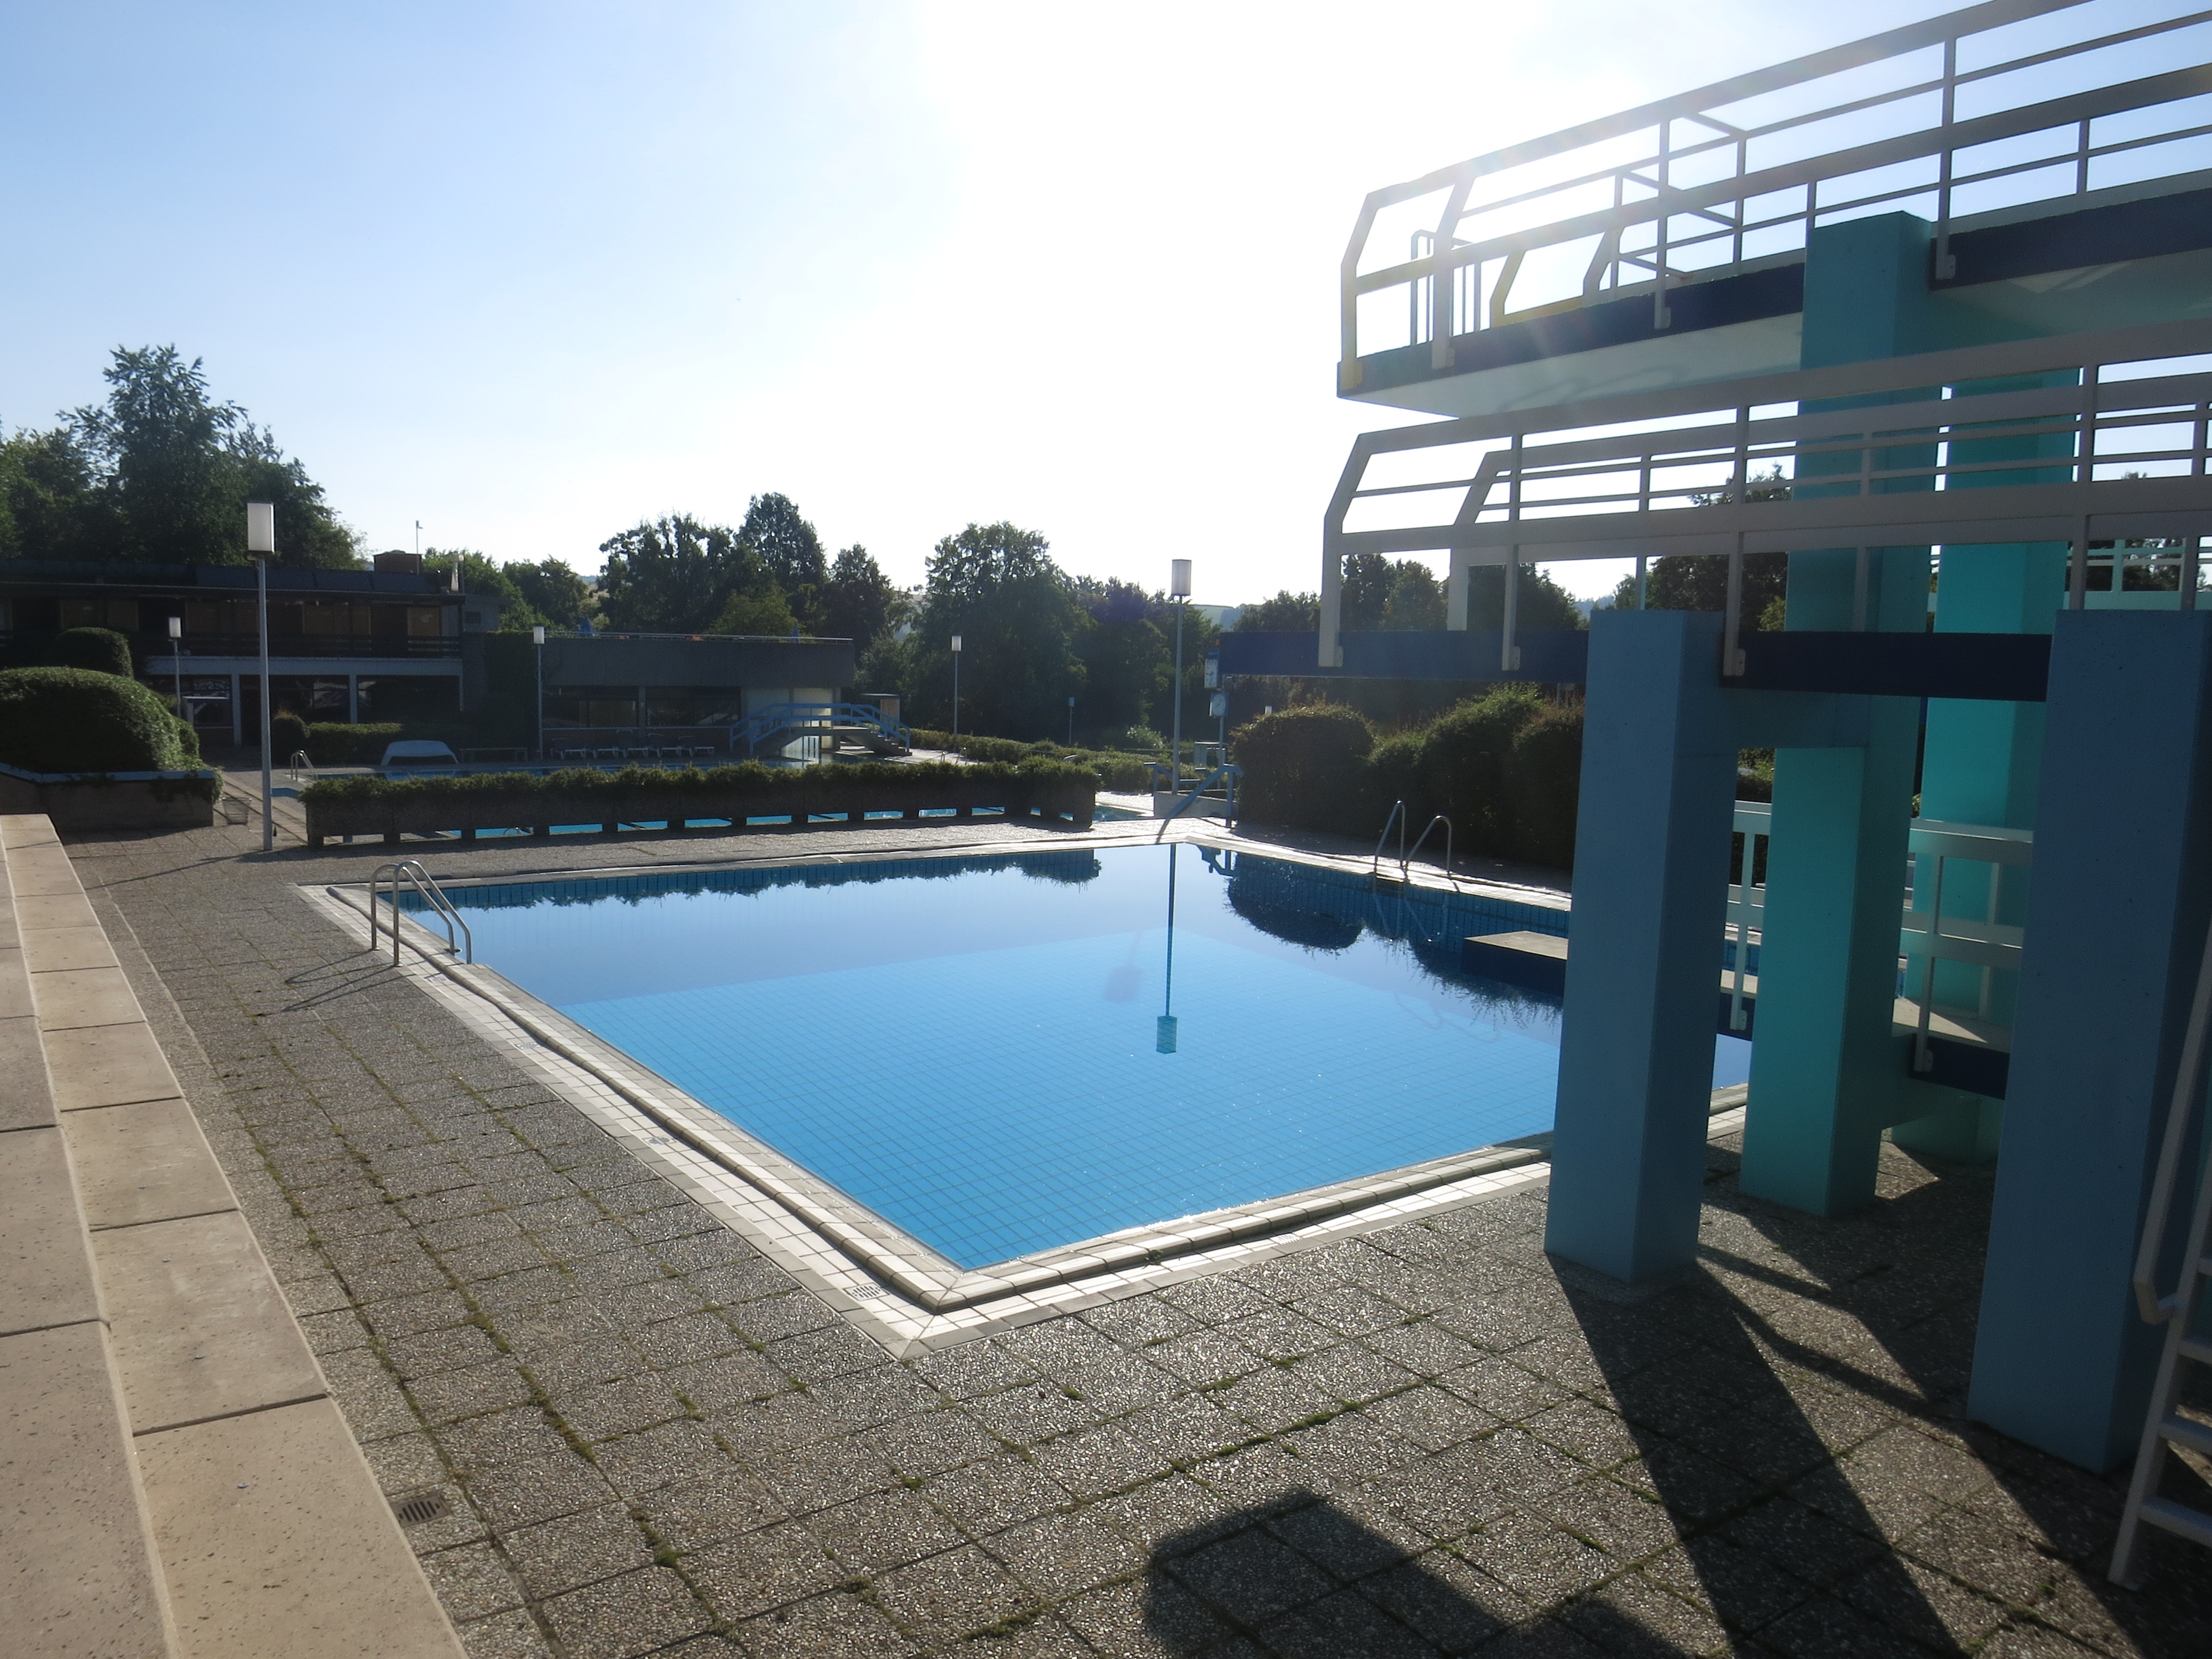 Das Bild zeigt ein Schwimmbecken in einem Freibad mit Sprungturm.